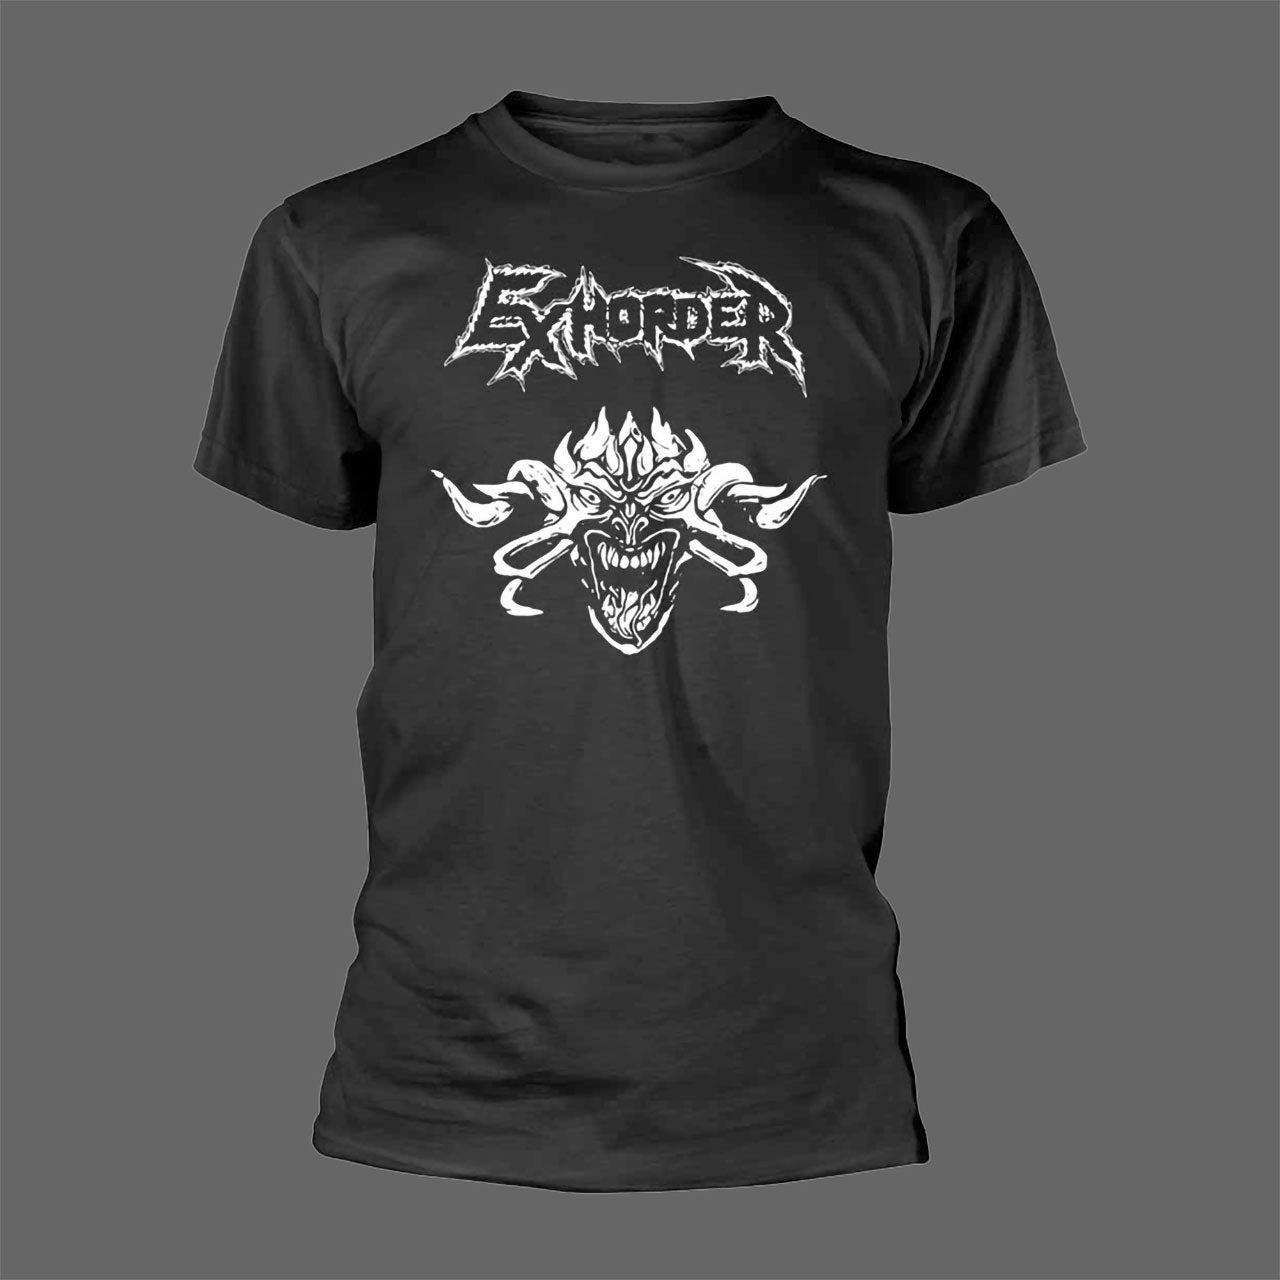 Exhorder - Demon (T-Shirt)